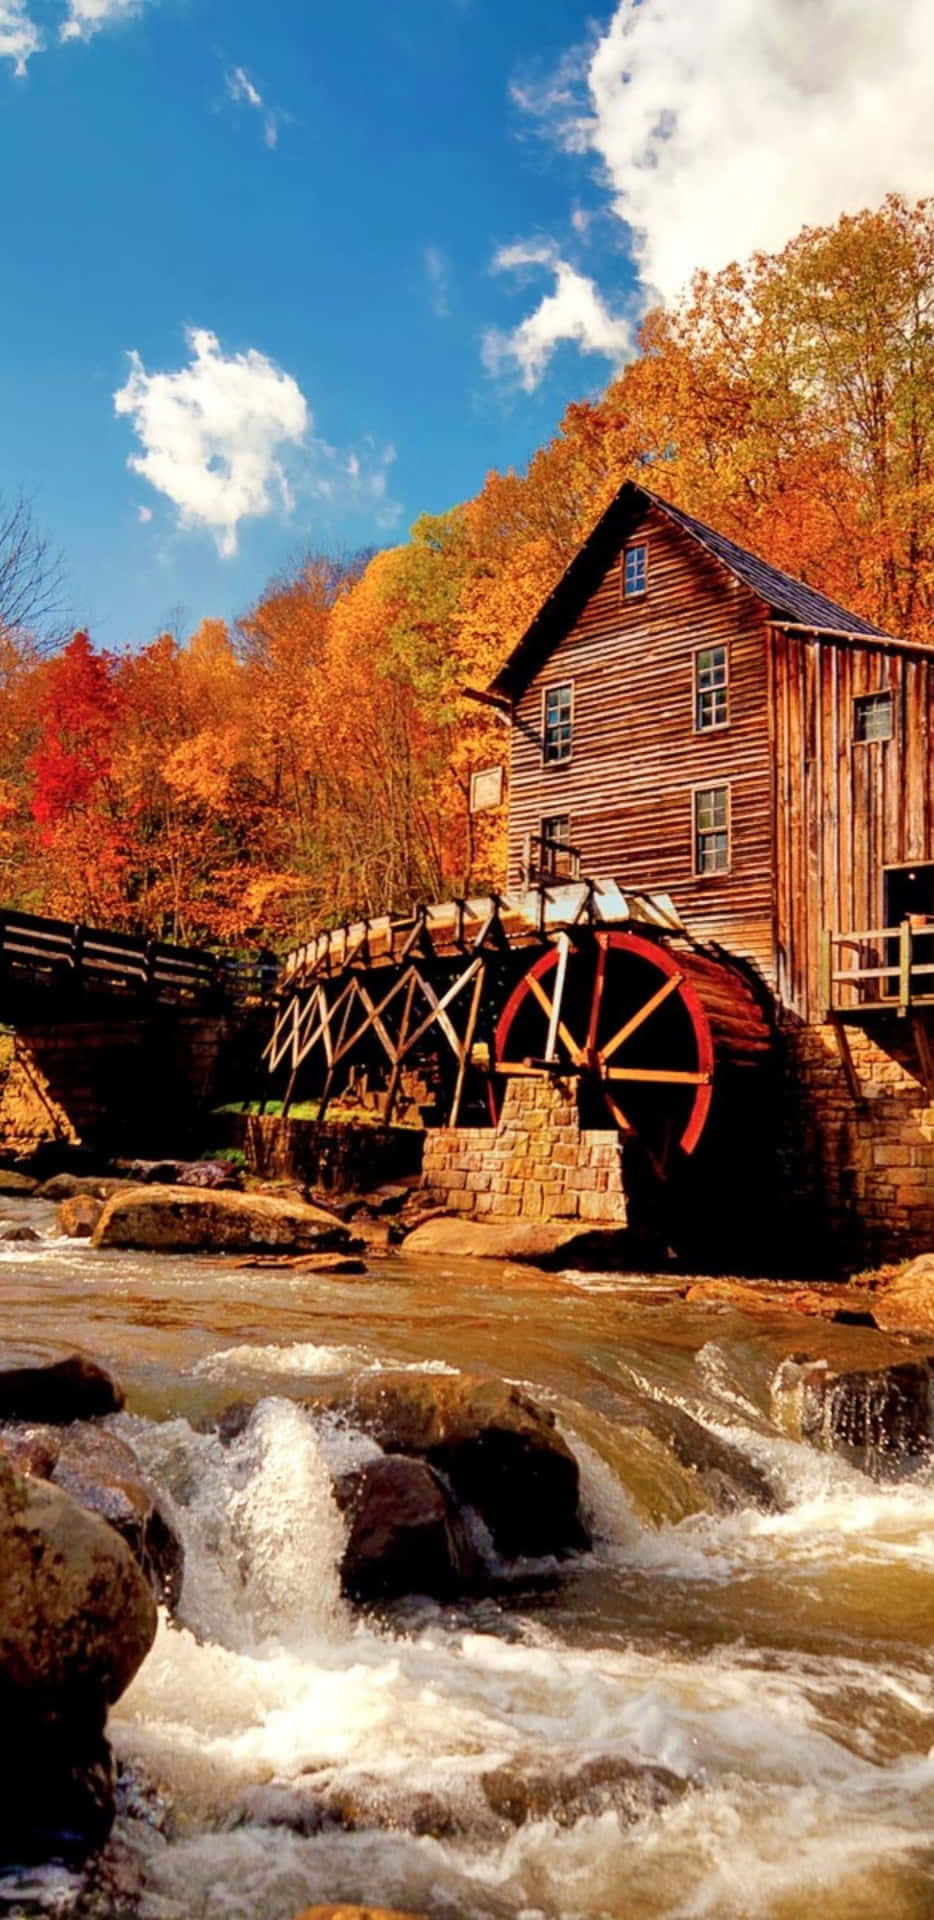 Pixel 3XL Autumn Background Glade Creek Grist Mill